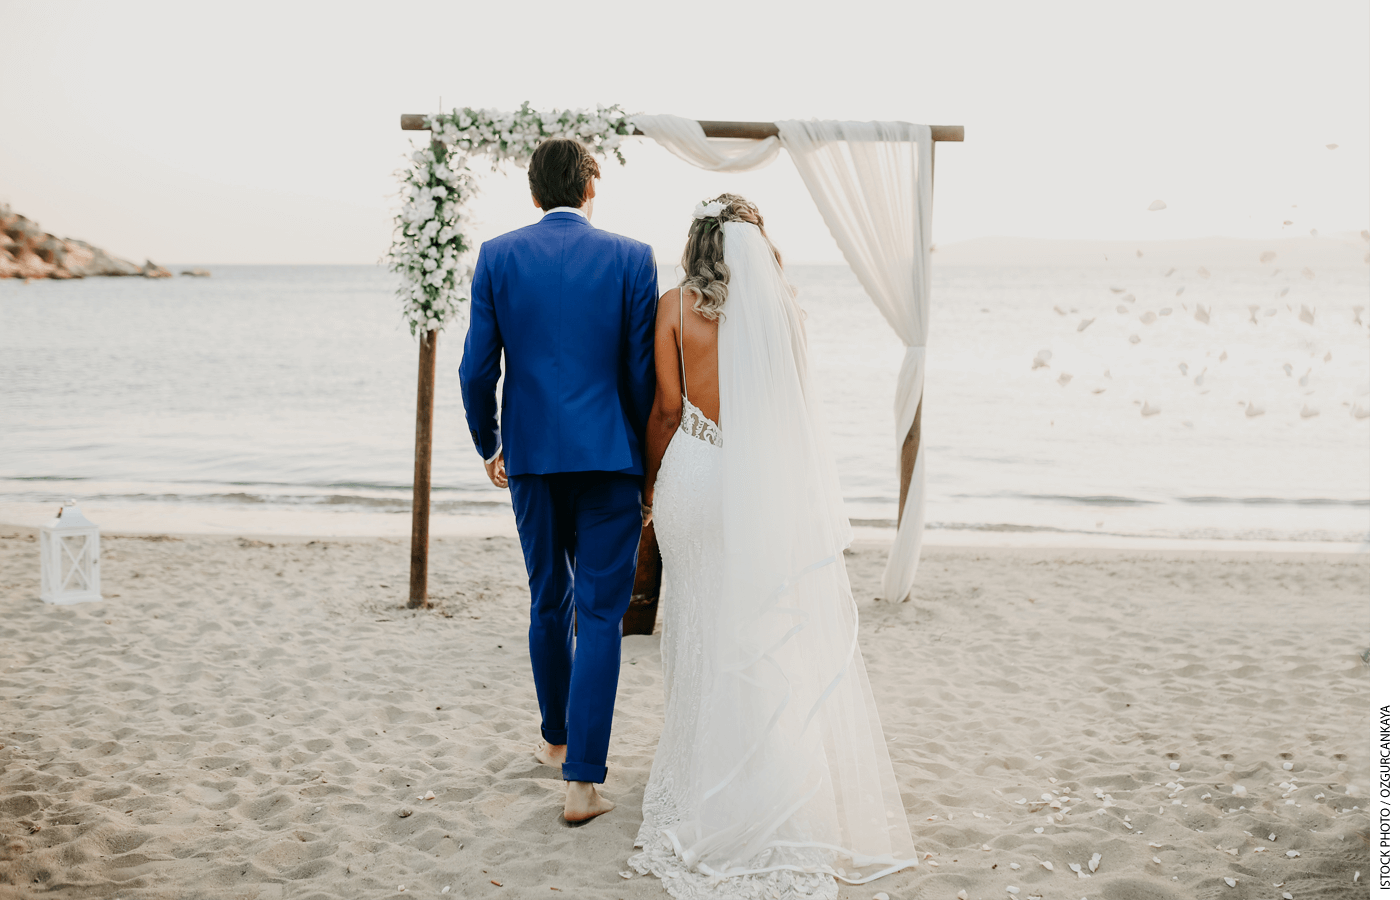 A bride and groom walk on a beach